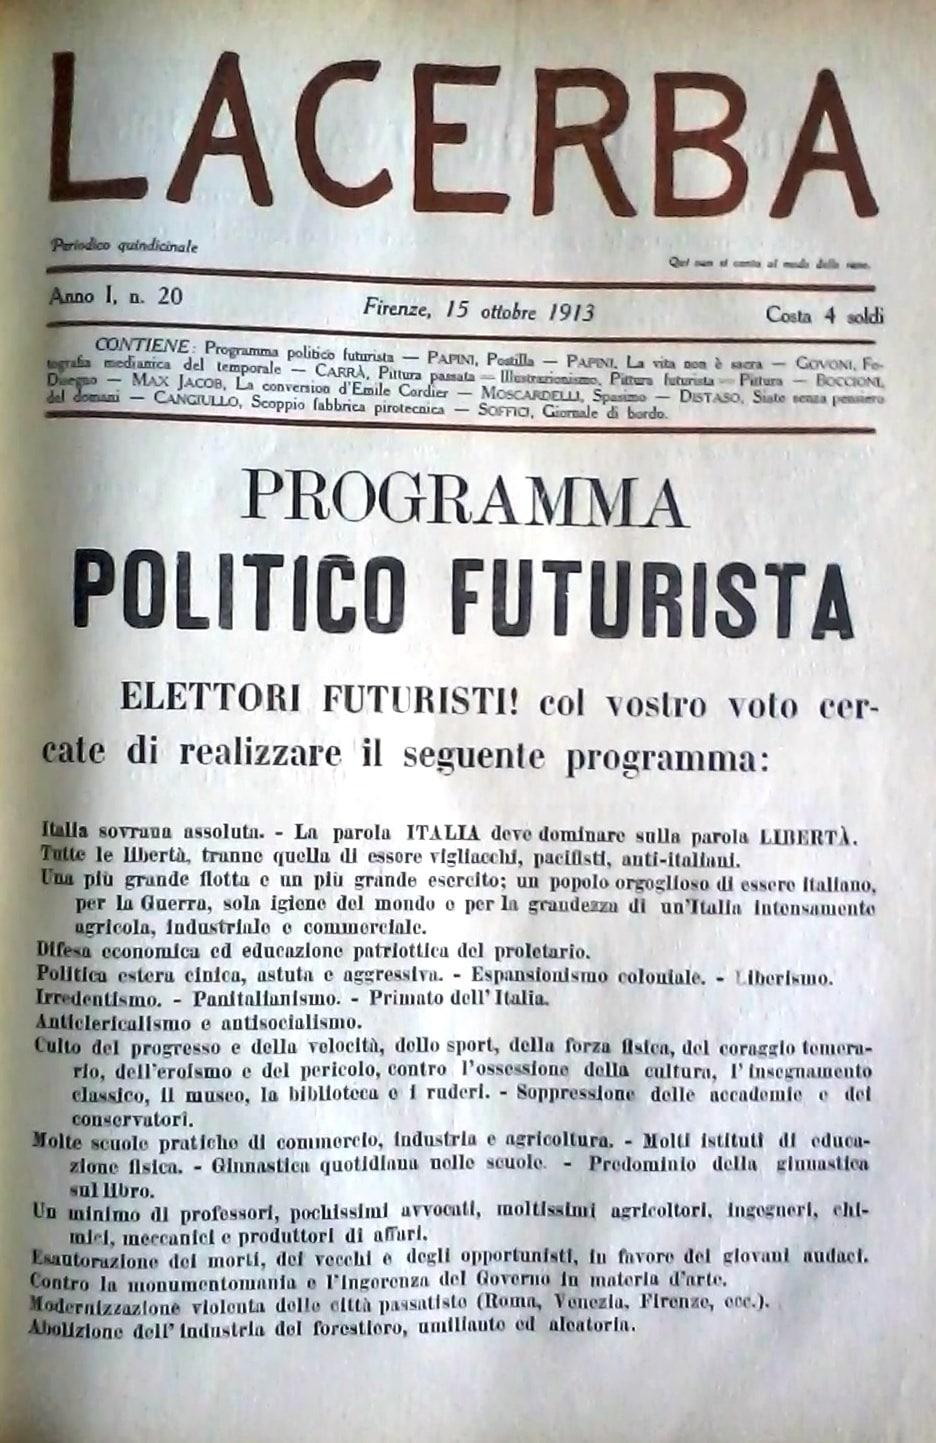 Il programma politico futurista su Lacerba del 15 ottobre 1913